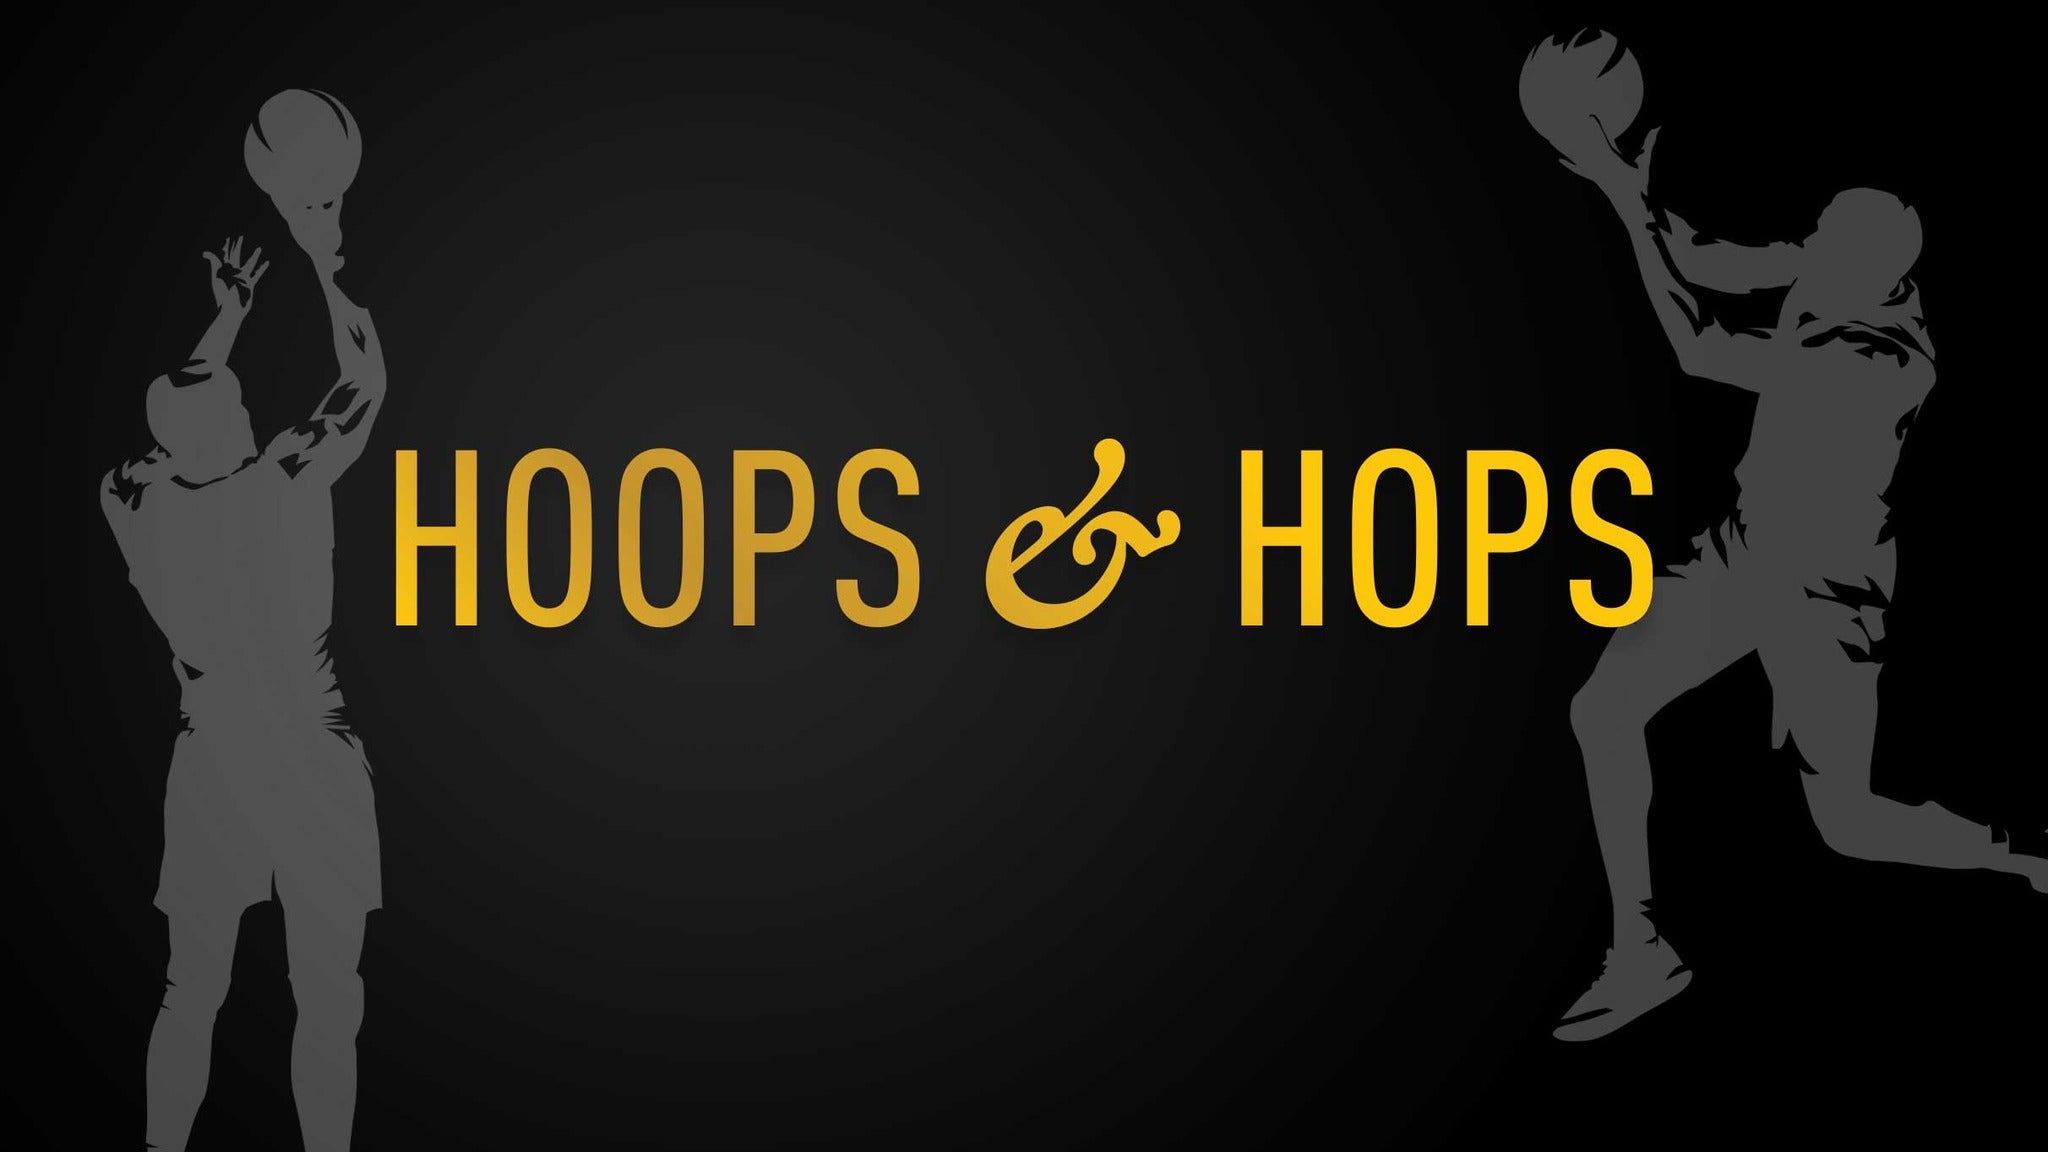 Hoops &amp; Hops at The Cosmopolitan presale information on freepresalepasswords.com